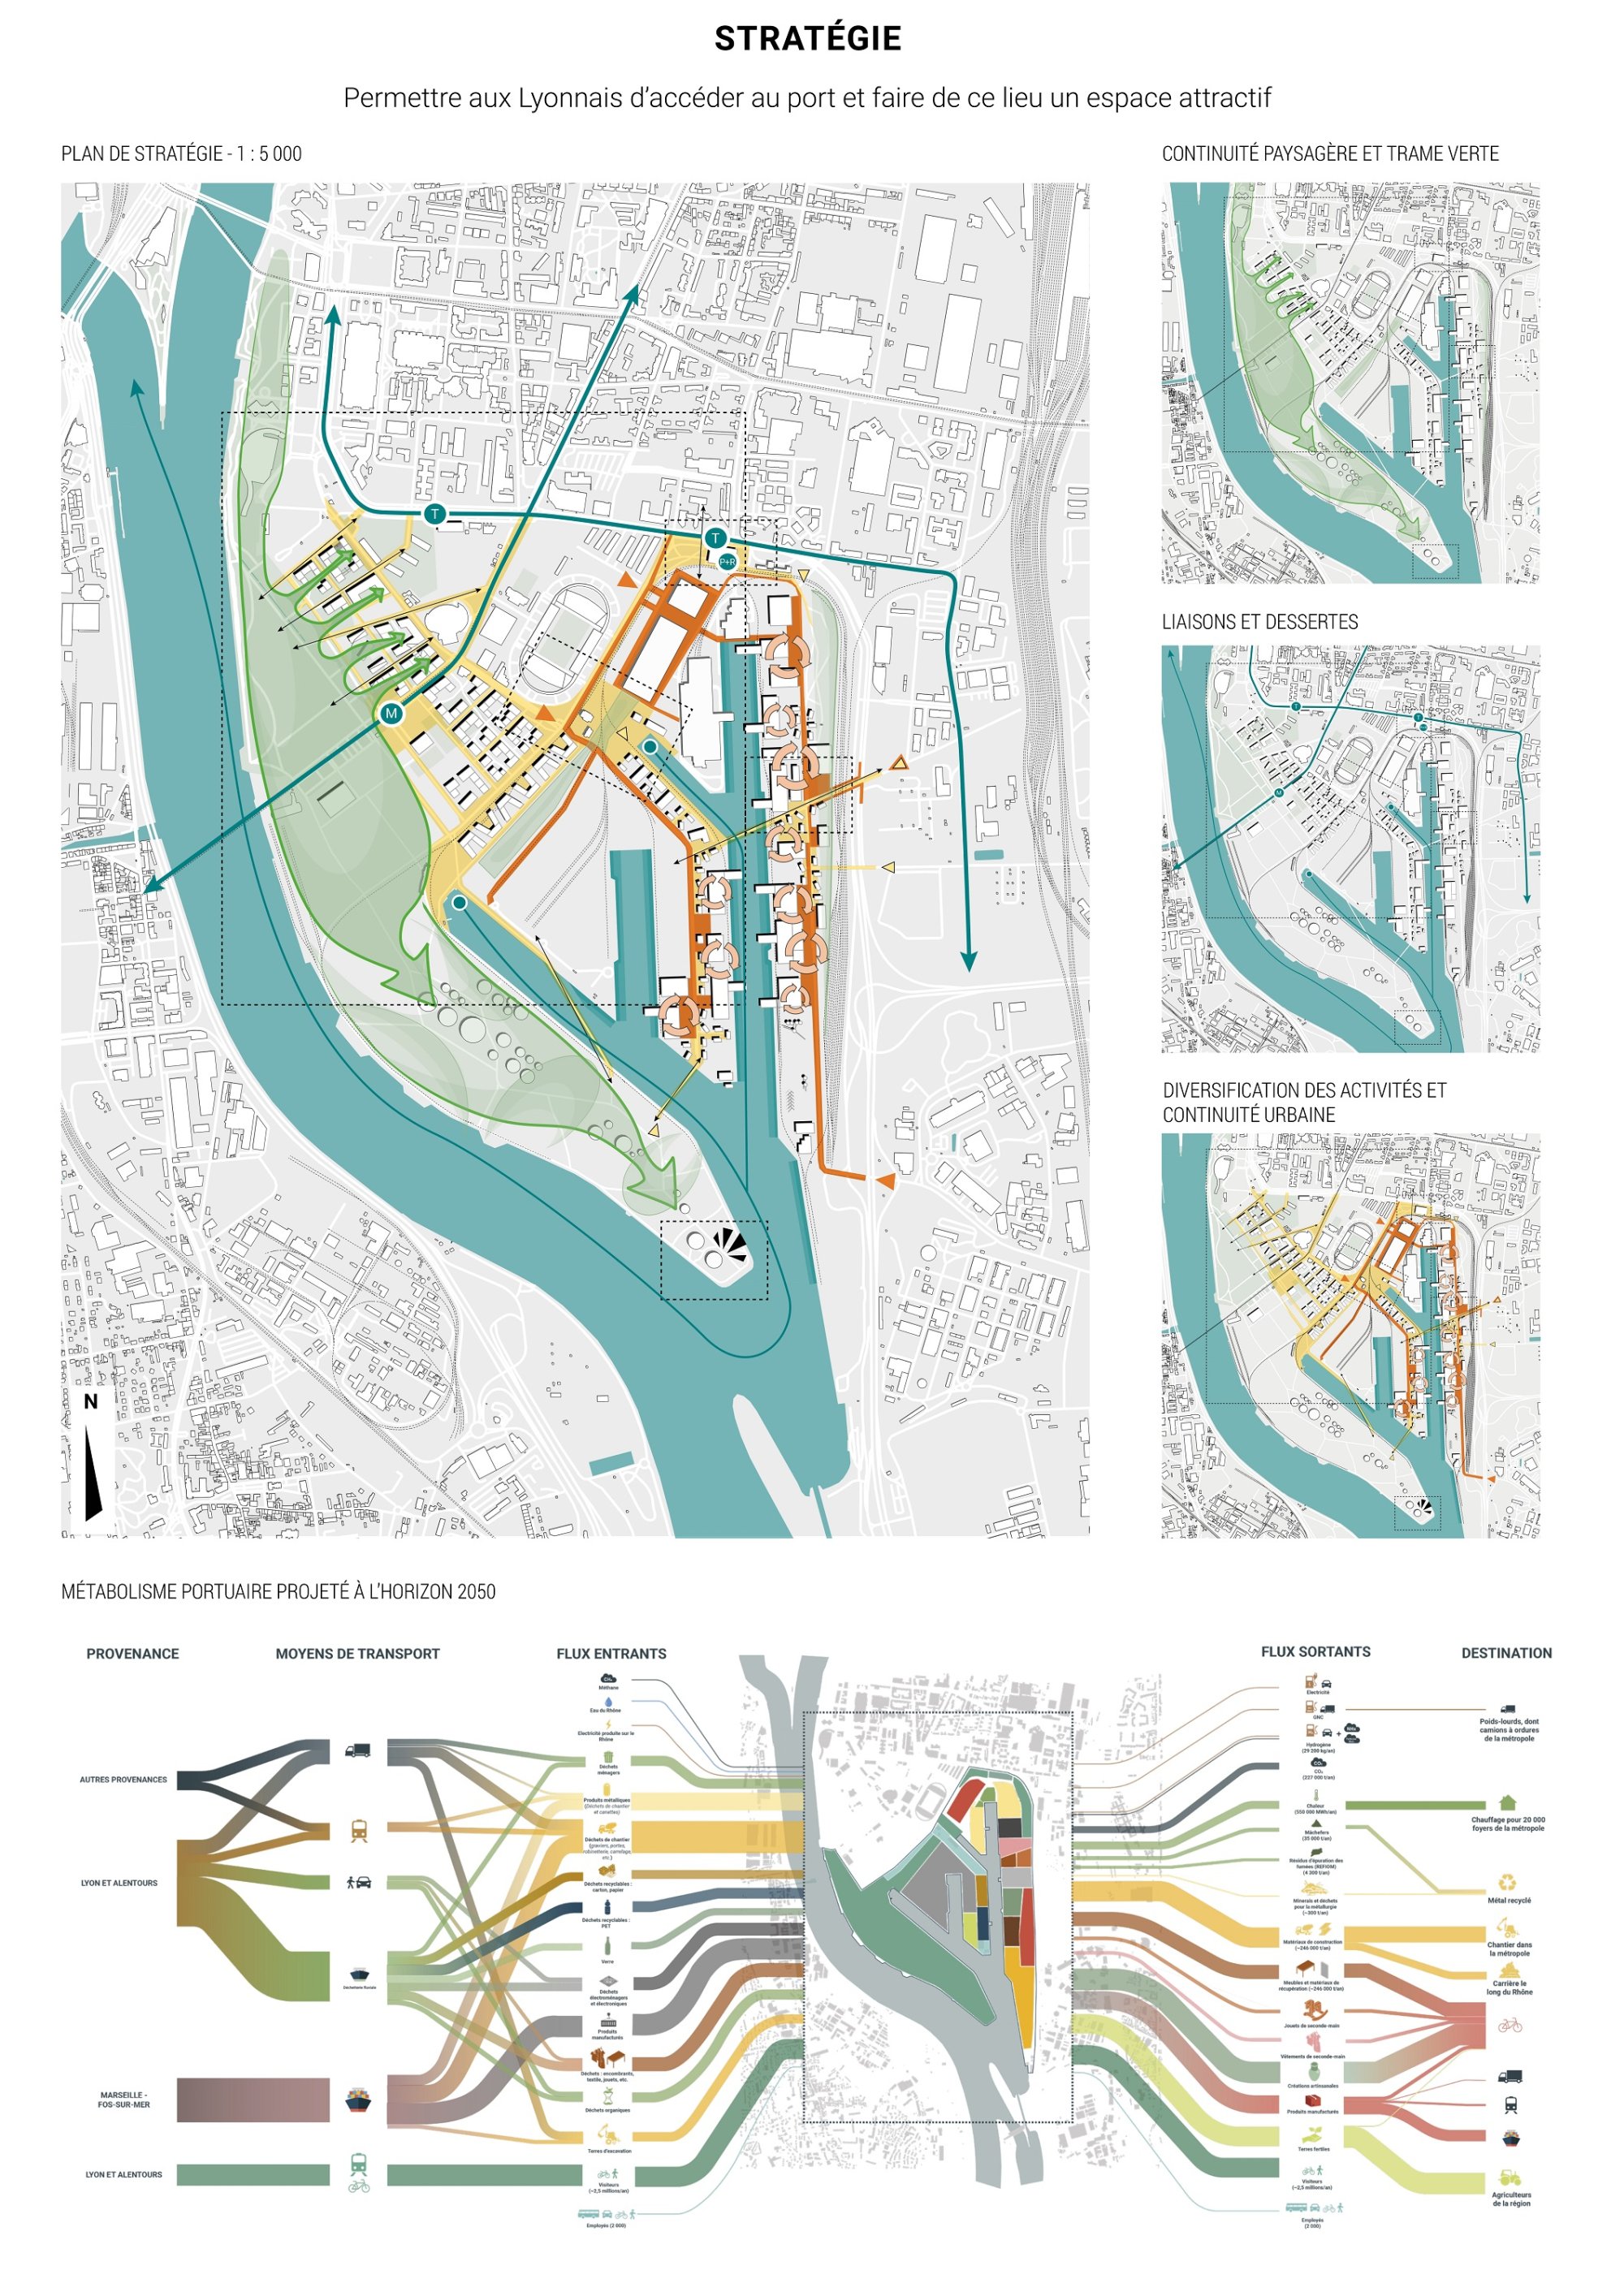 MELTING PORT : ouvrir le port Édouard Herriot aux Lyonnais et asseoir la place de l'industrie en ville - 3